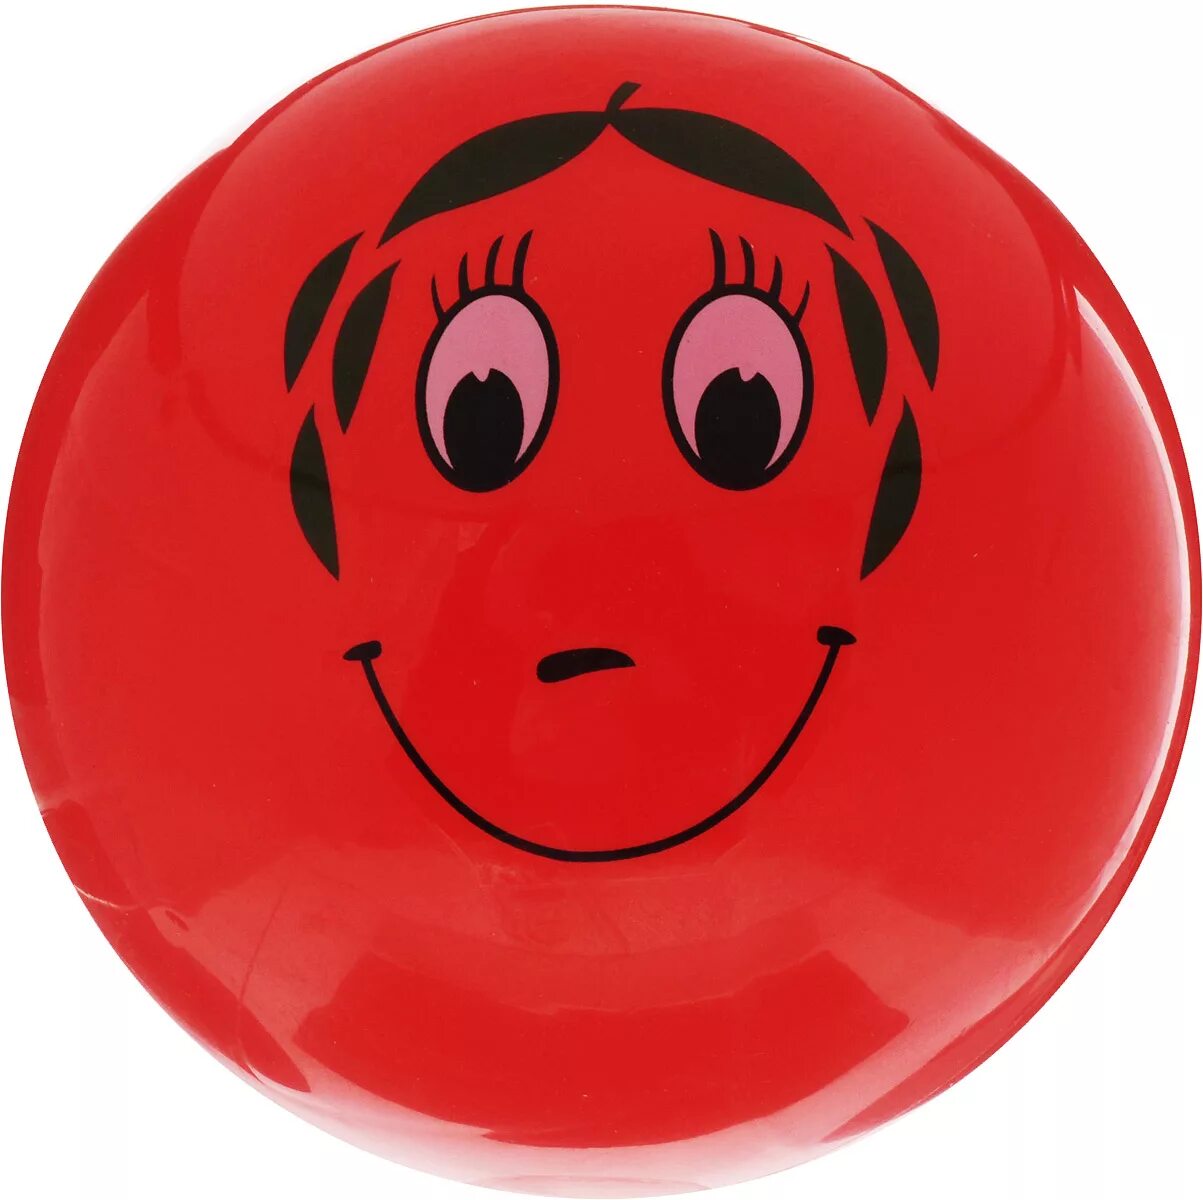 Мяч детский. Красный мячик. Мячики для детей. Мяч резиновый детский. Красный мяч купить